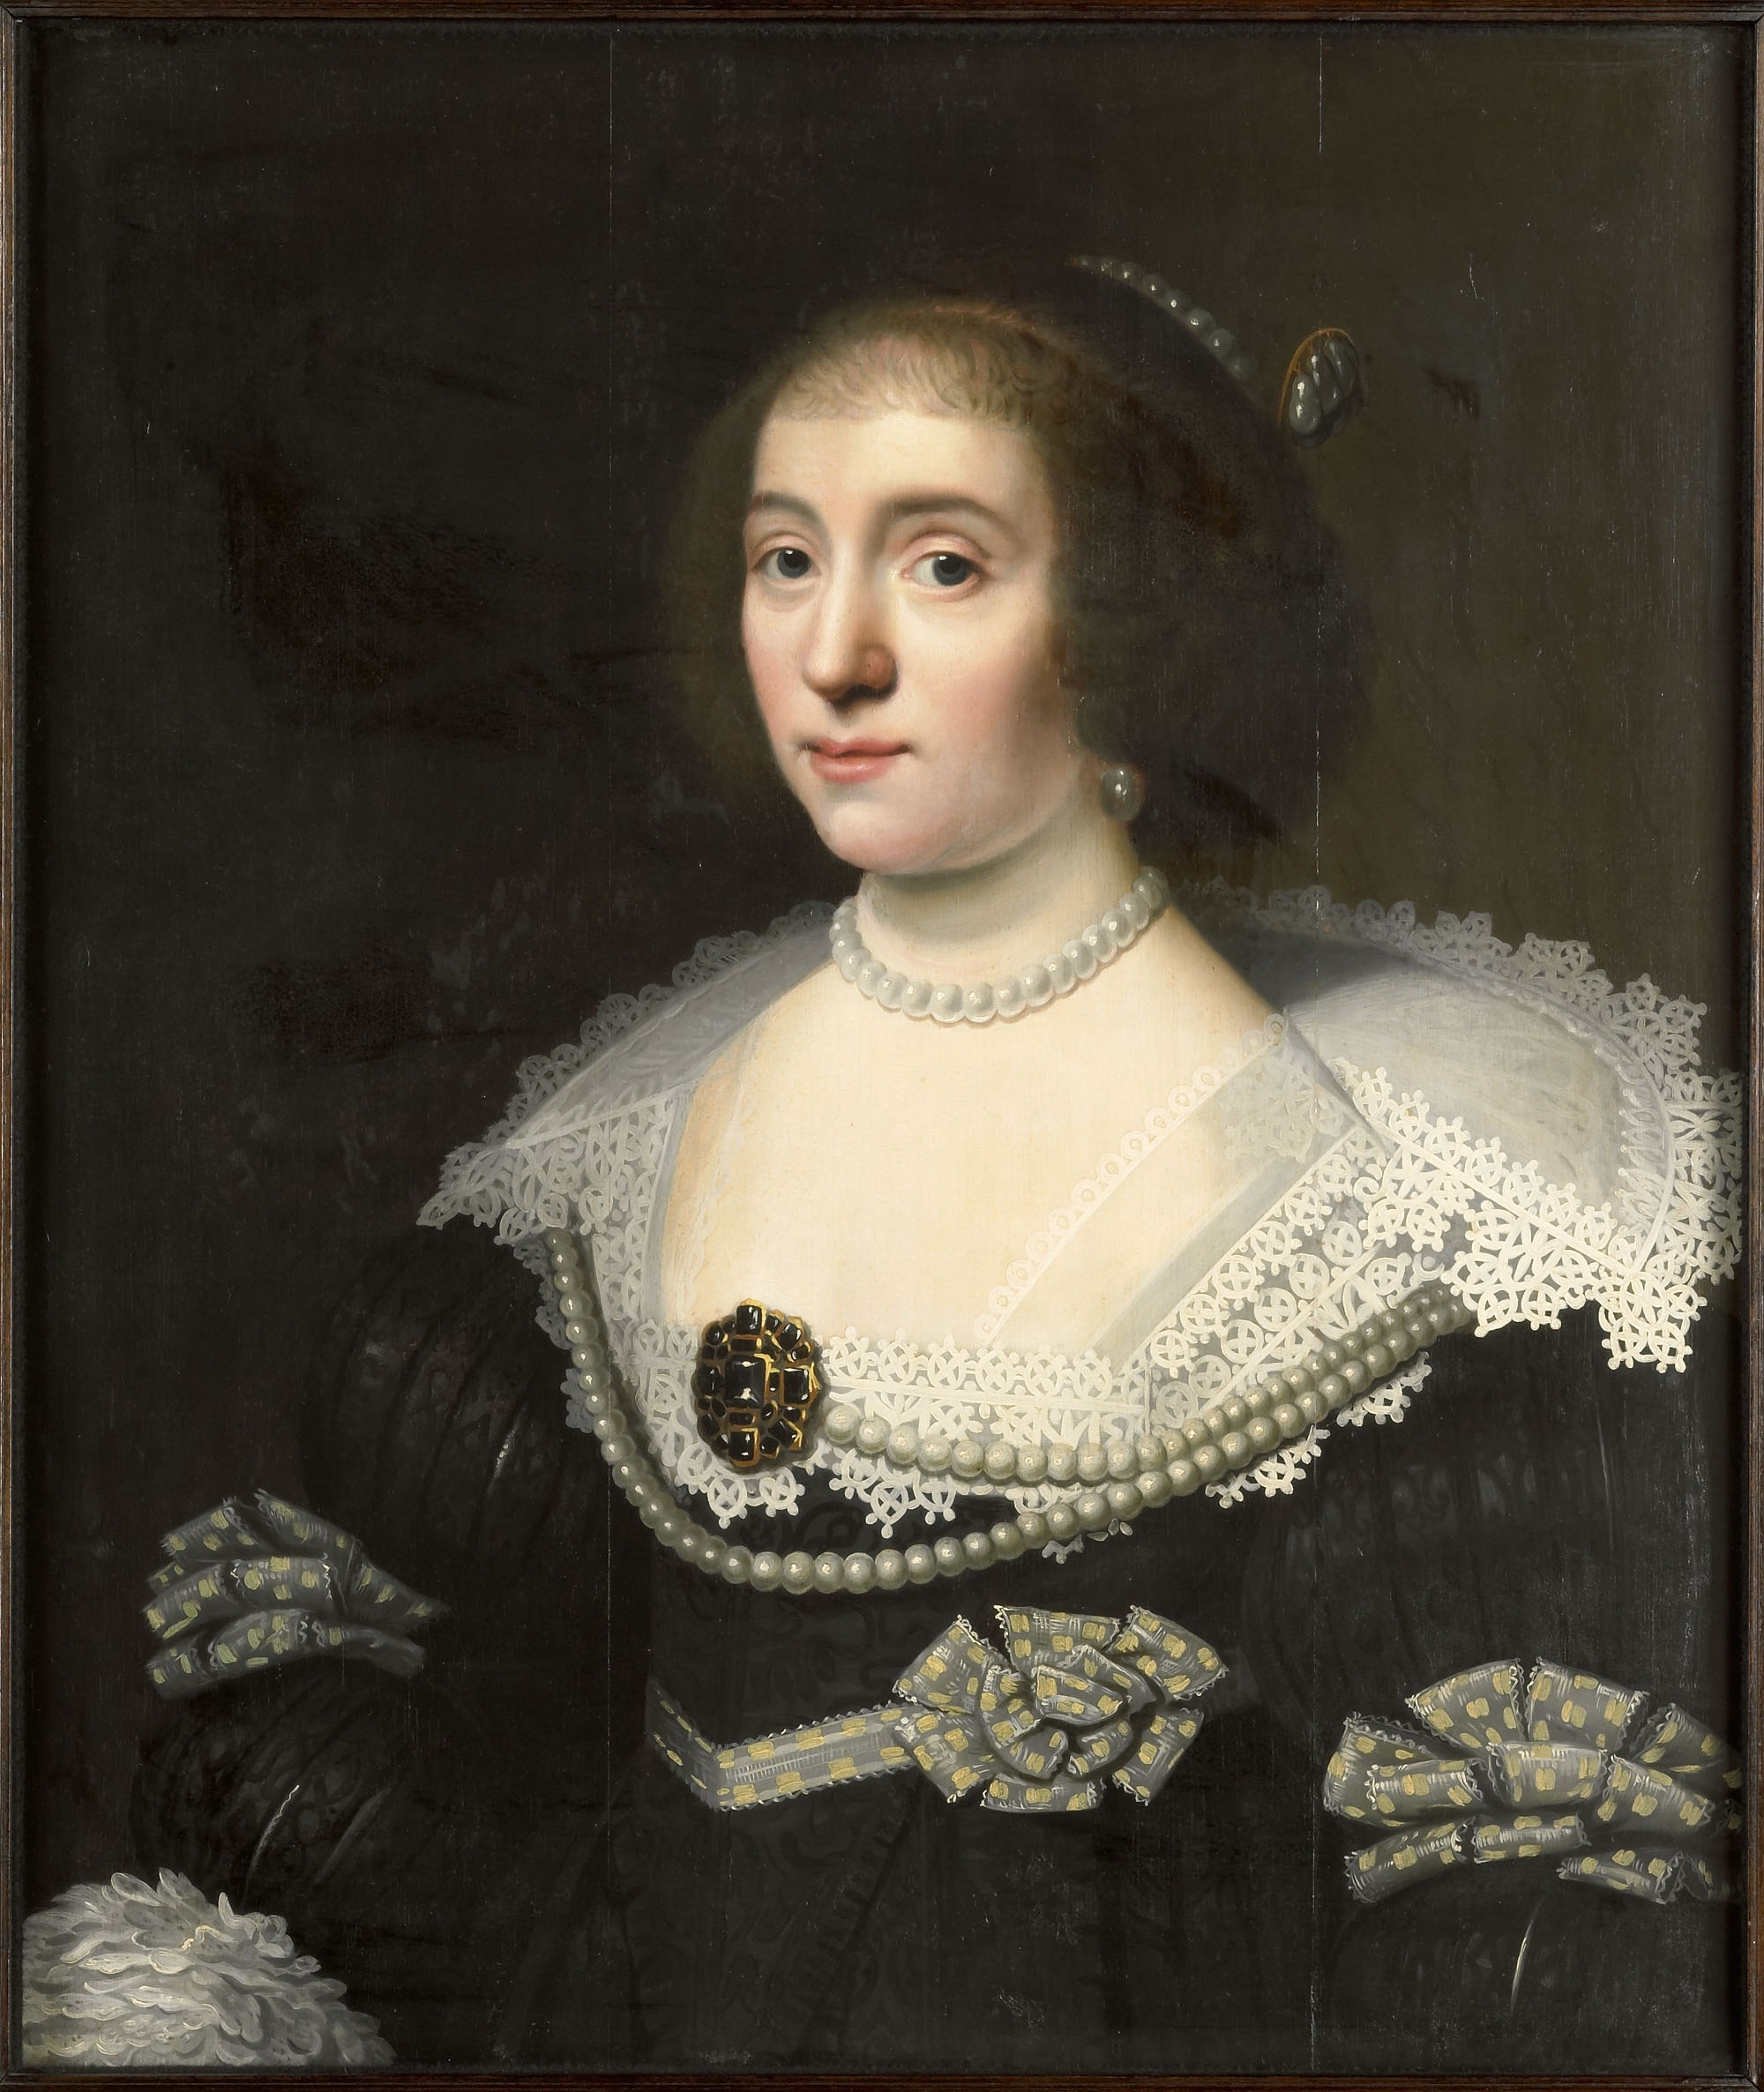 Michiel Jansz. van Mierevelt, Portrait von Amalia von Solms-Braunfels (1602-75), ca. 1632, Rijksmuseum Muiderslot